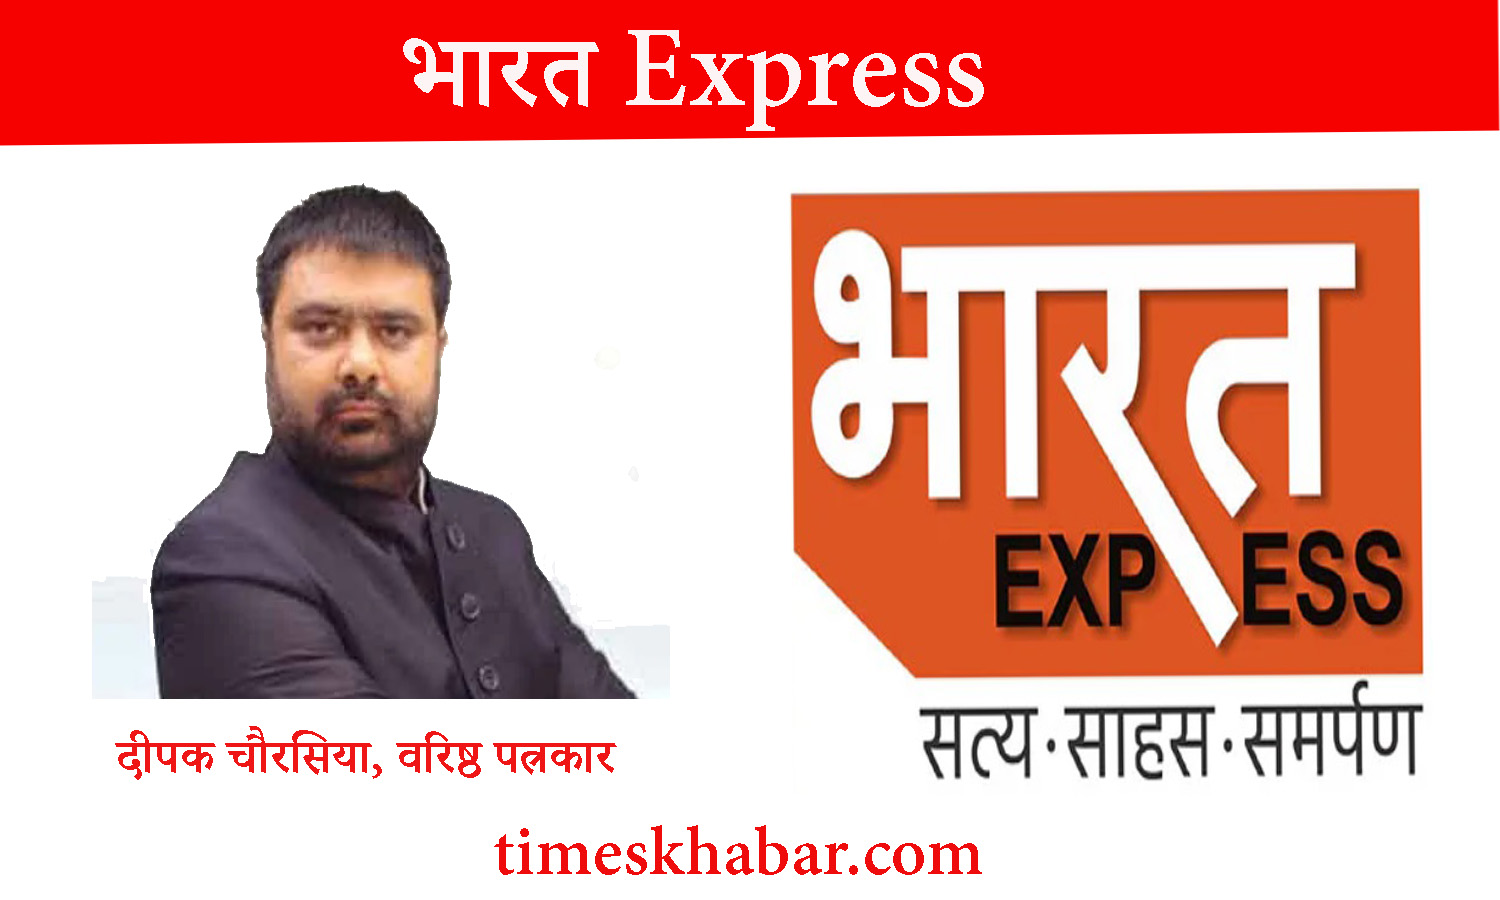 वरिष्ठ पत्रकार दीपक चौरसिया अपनी नई पारी की शुरूआत करेंगे न्यूज चैनल ‘भारत एक्सप्रेस’से। चैनल शुभारंभ की तिथि 14 जनवरी।